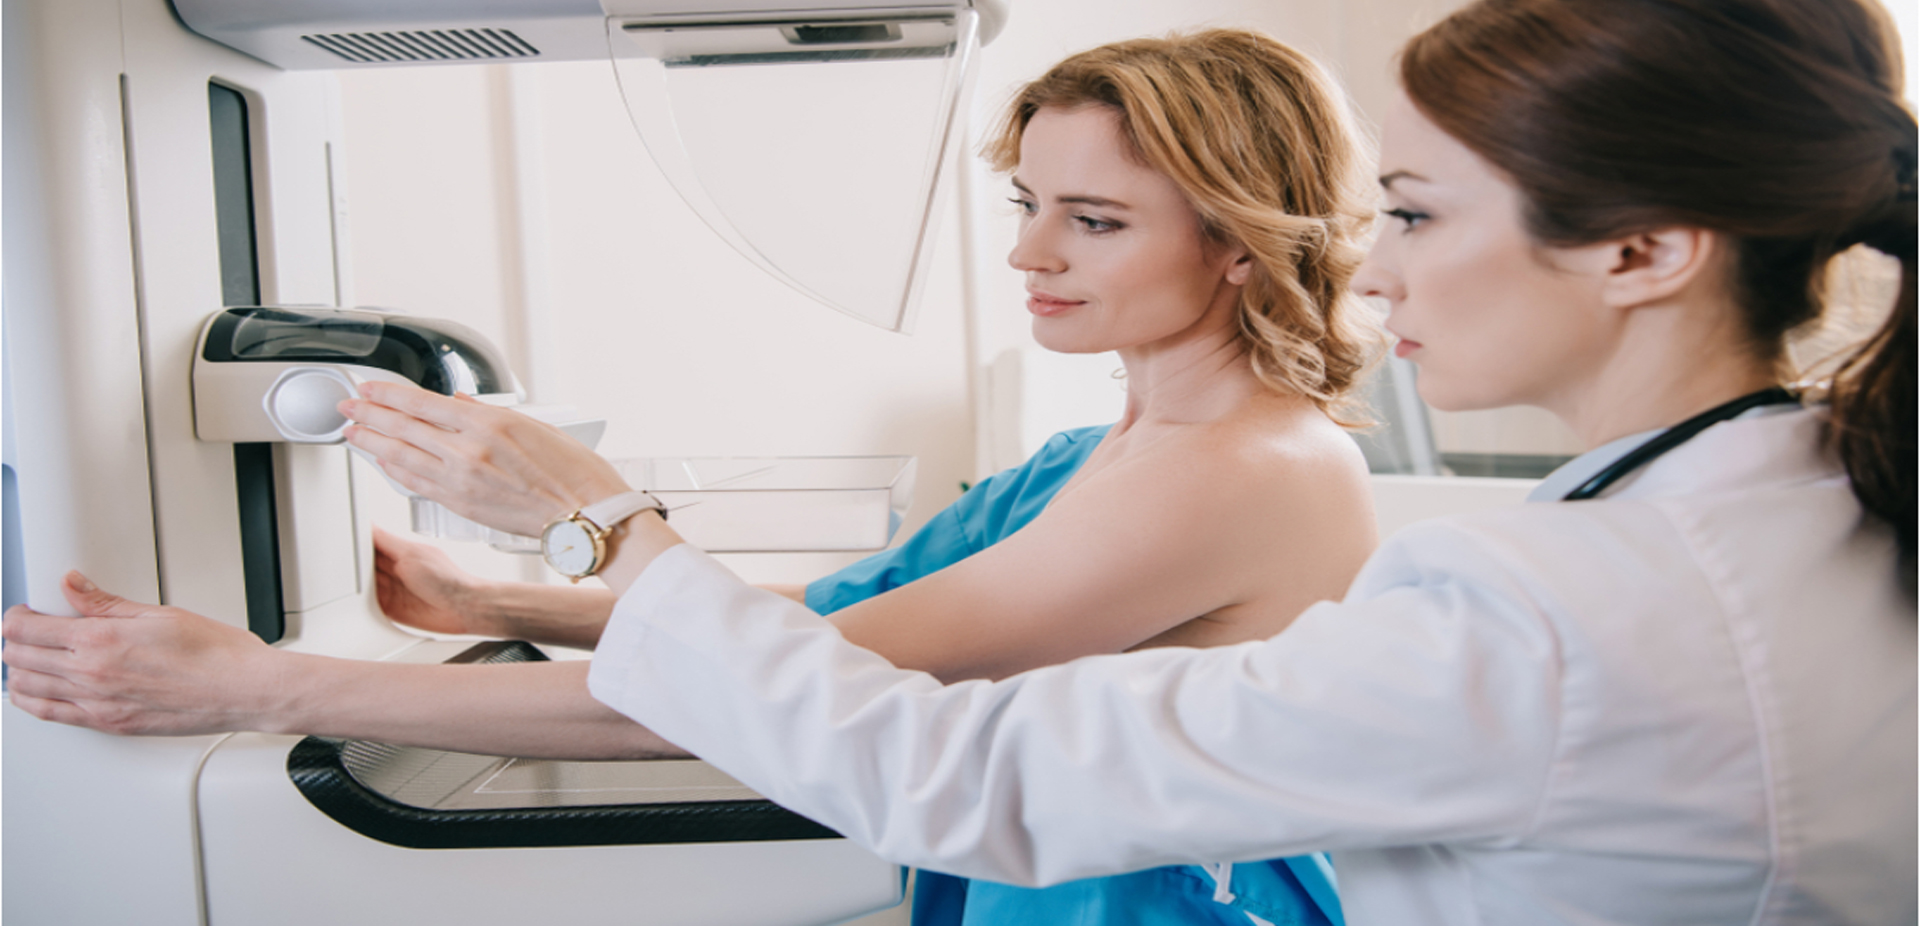 Estudo de câncer reacende debate sobre quando iniciar mamografias periódicas